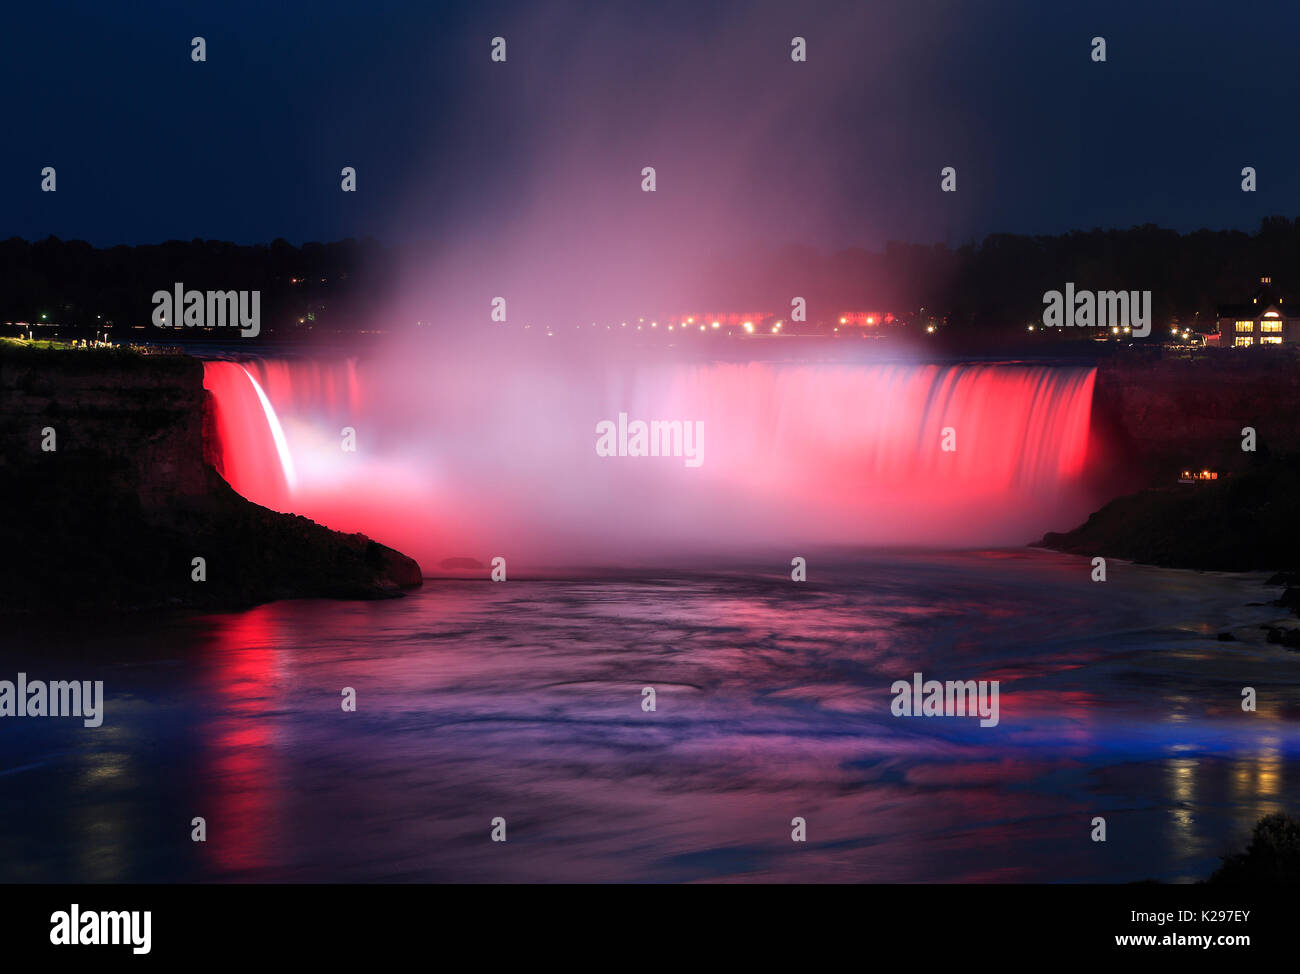 Niagara Falls illuminated at night, Canada and USA Stock Photo